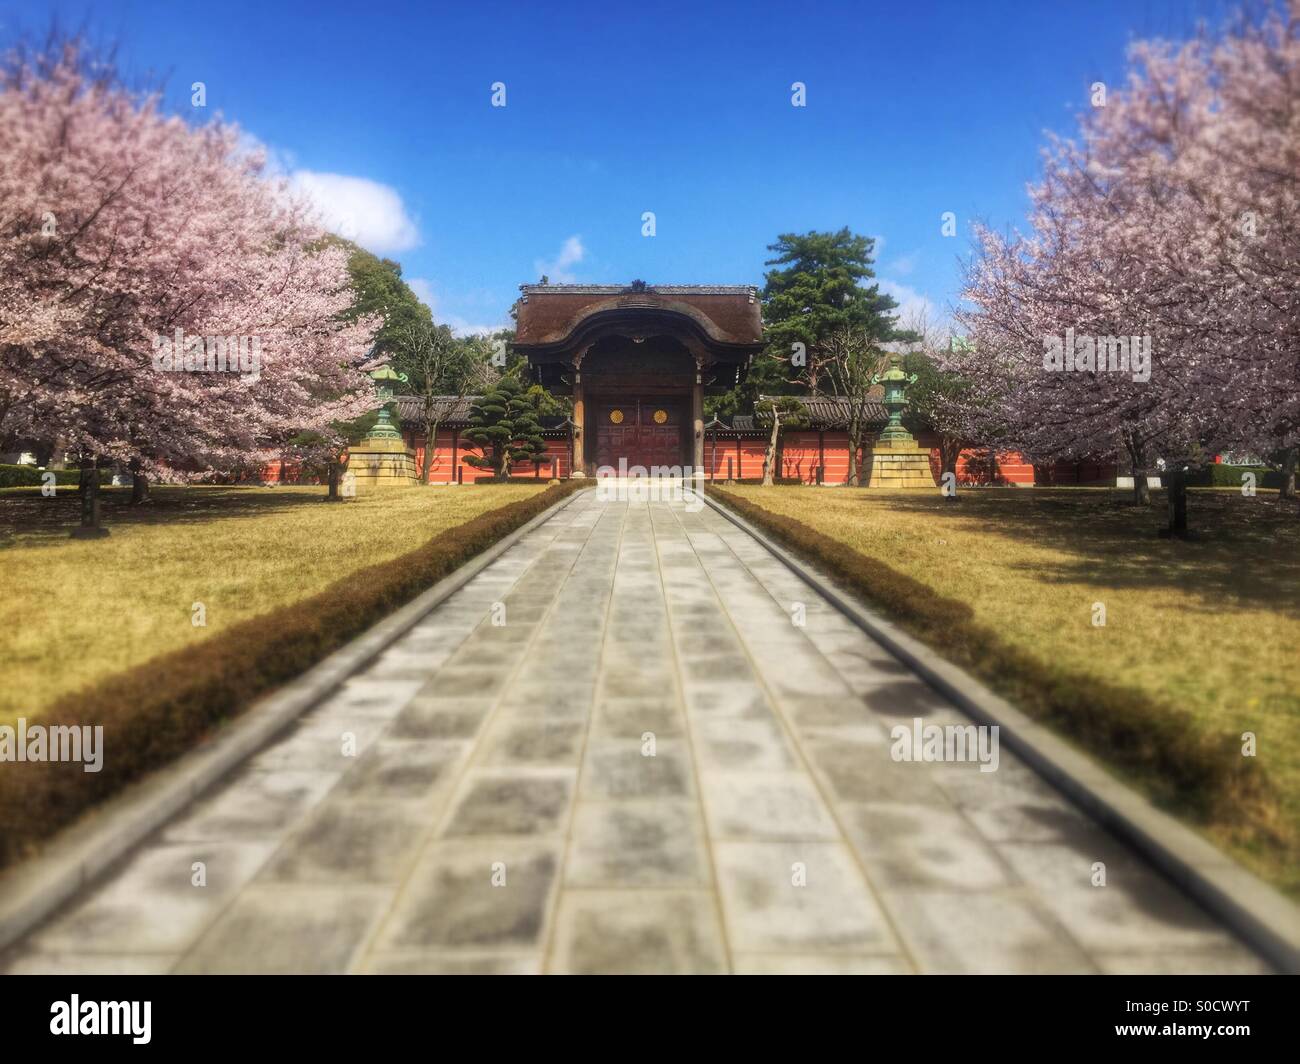 Karamon gate ou traditionnels à Soji-ji, un temple bouddhiste à Tsurumi, à Yokohama, au Japon, avec sakura ou cerisiers en fleurs au printemps. Banque D'Images